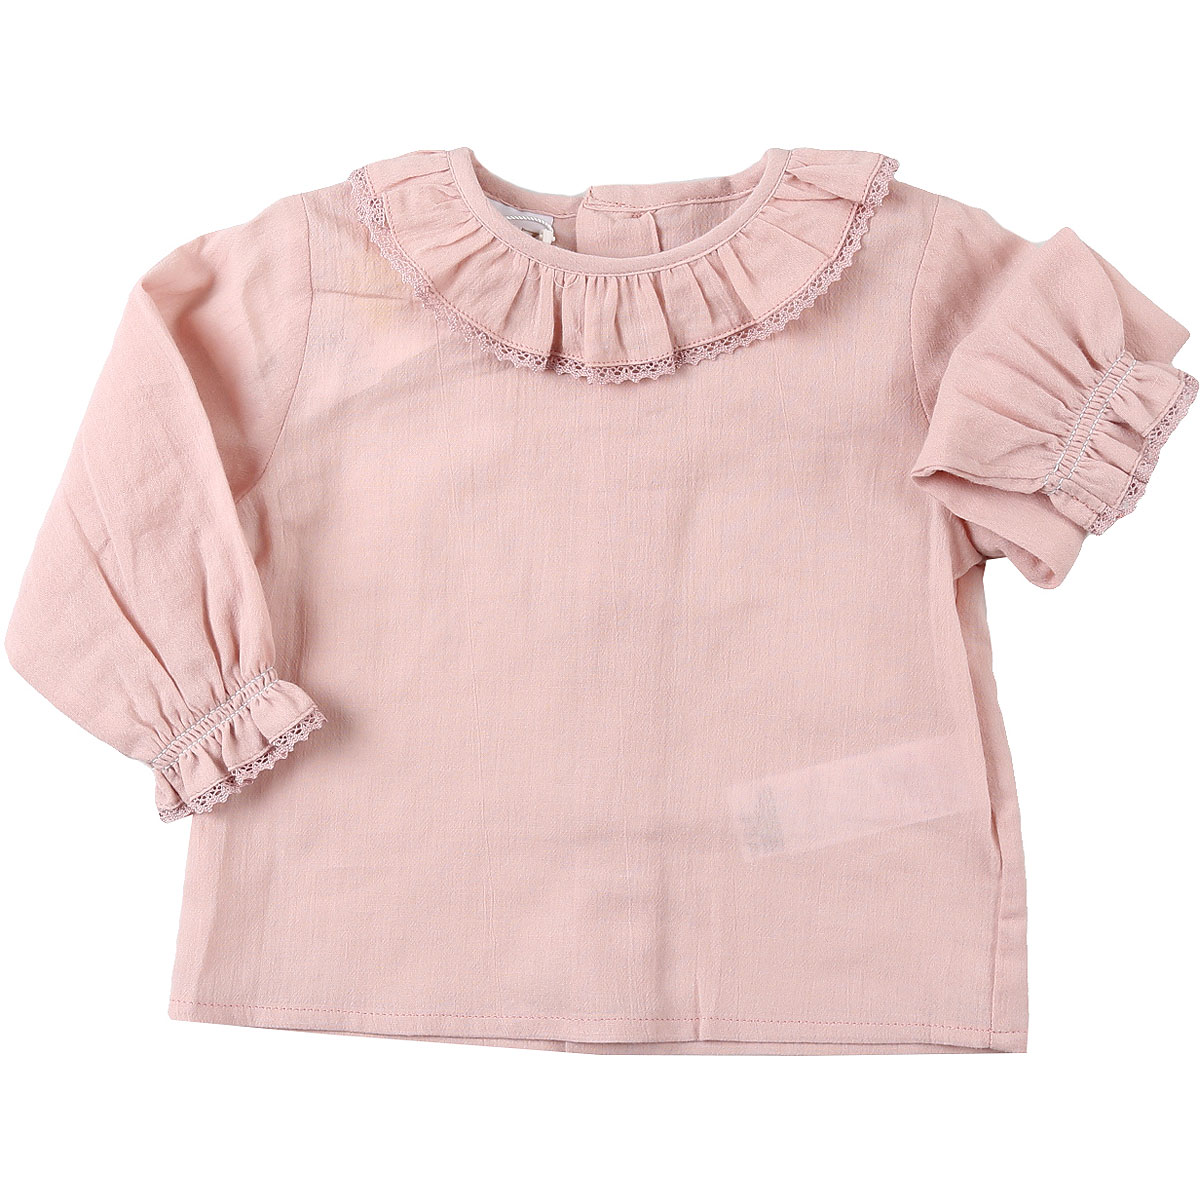 Paz Rodriguez Baby Hemd für Mädchen Günstig im Sale, Pink Lavendel, Baumwolle, 2017, 12M 18M 6M 9M